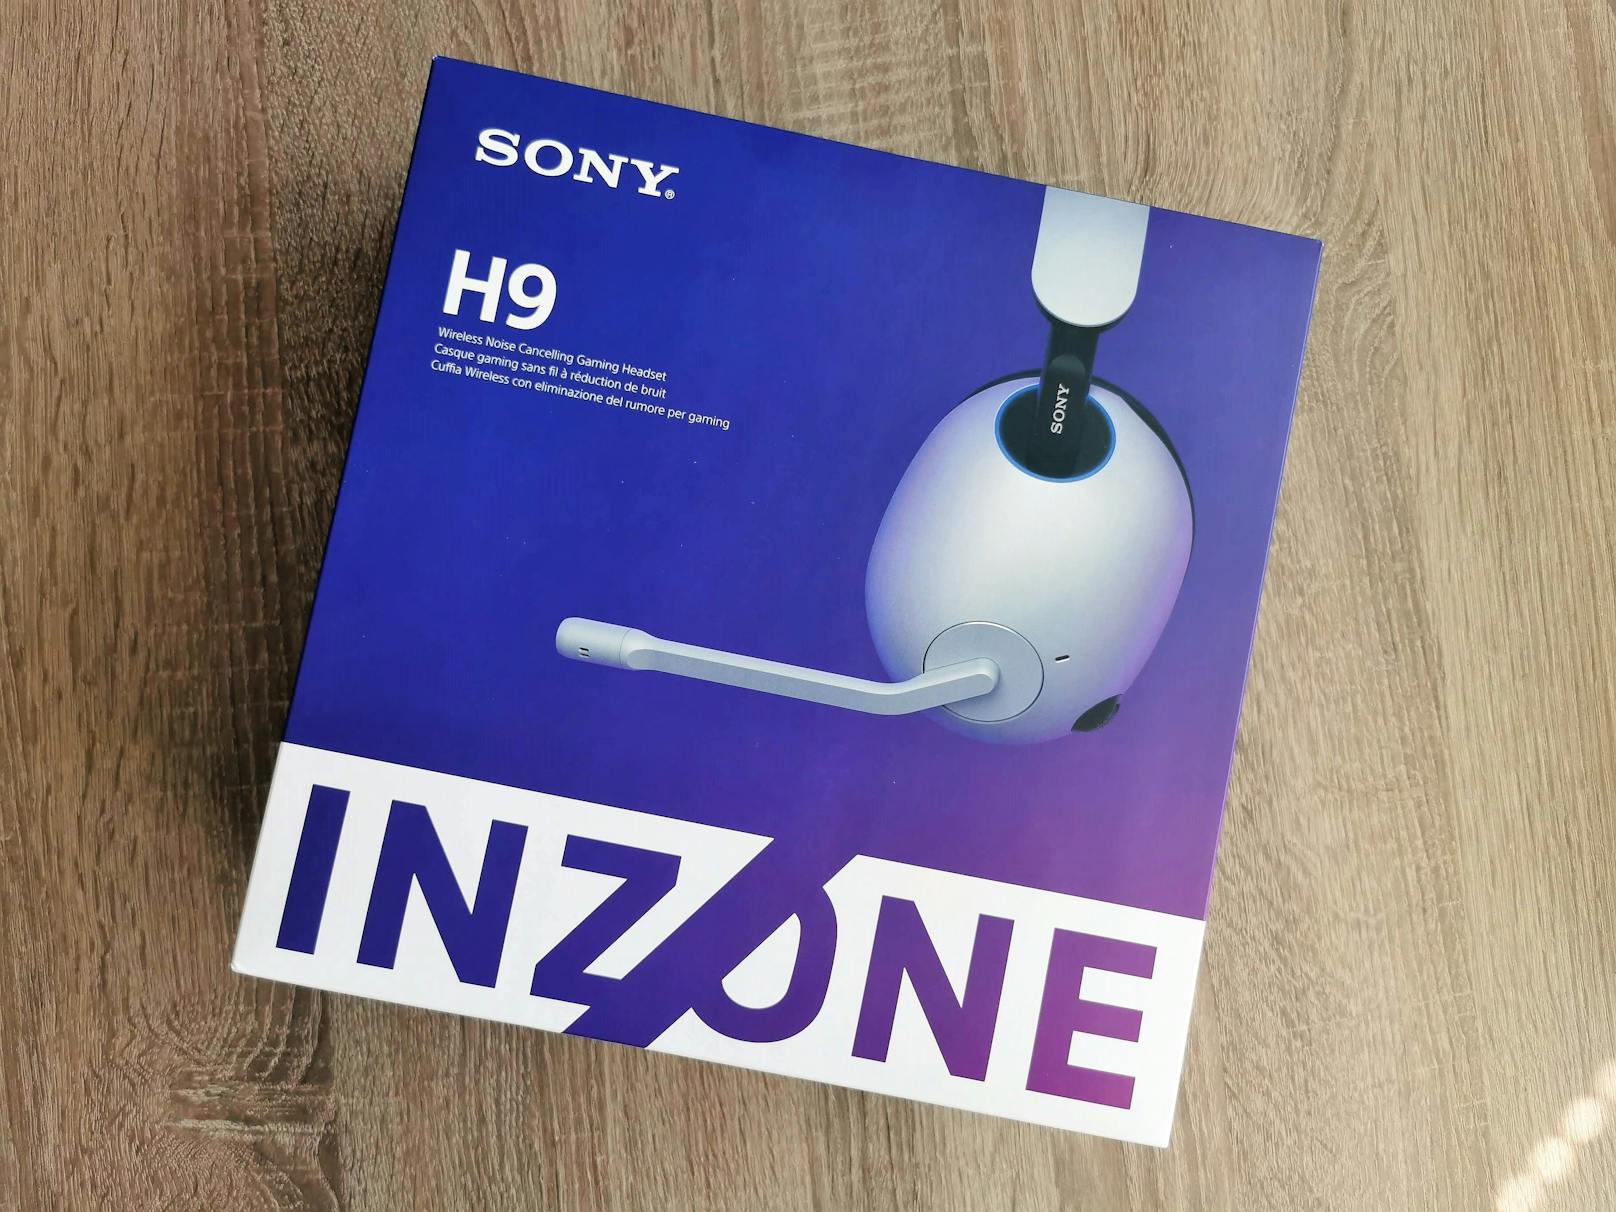 Zwar sind die Inzone H9 vollkommen auf das Gaming ausgelegt, sie bieten aber gleichzeitig auch viele der ausgezeichneten Sound-, Geräuschunterdrückungs- und...